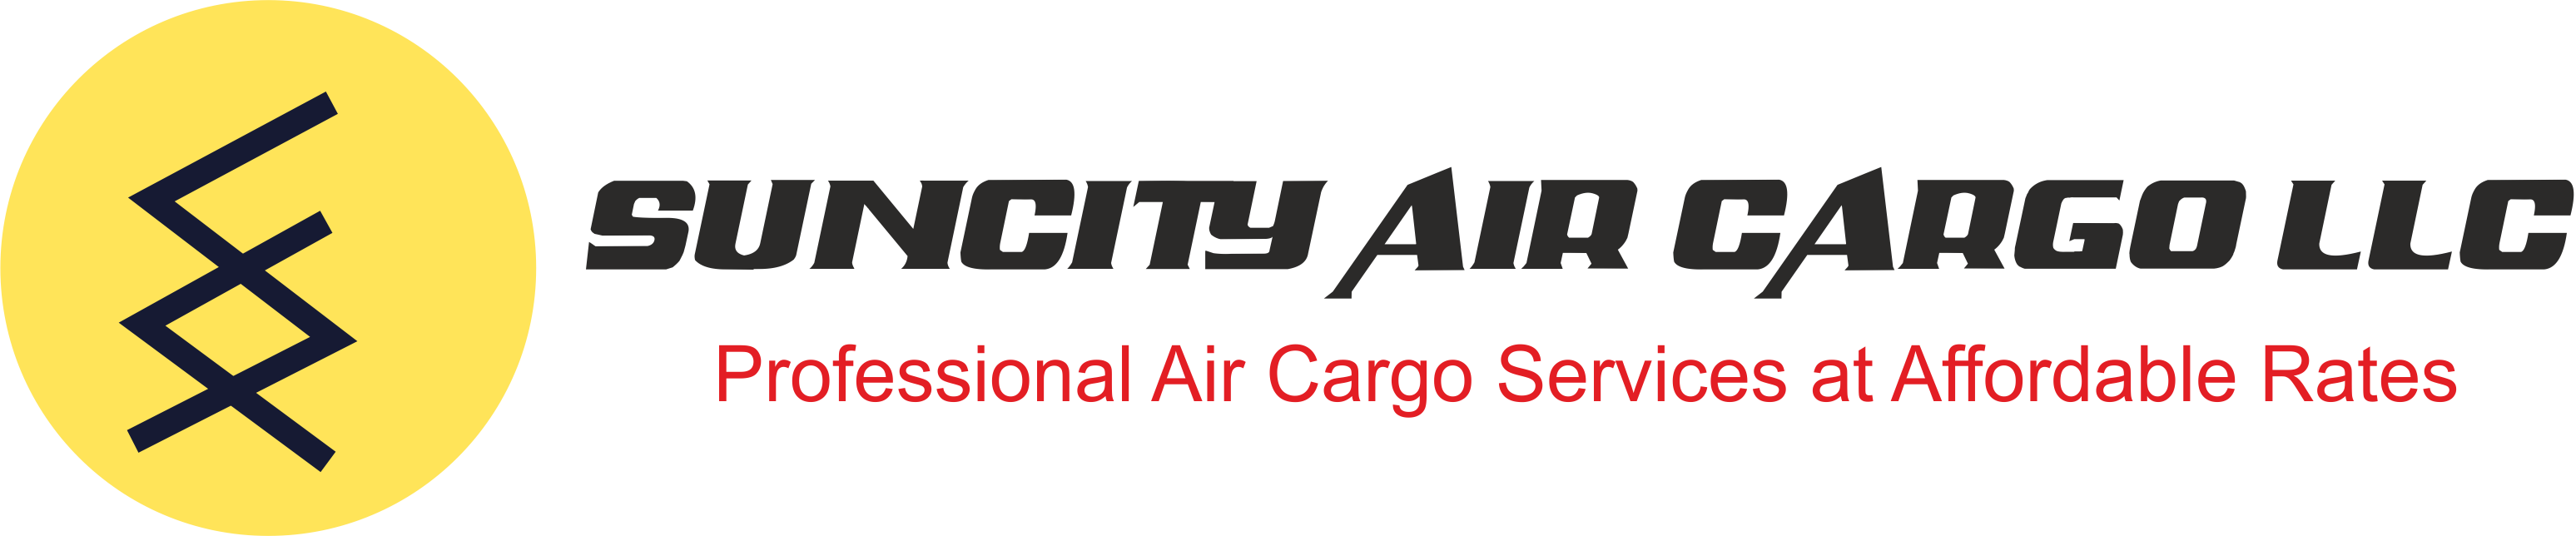 Suncity Air Cargo